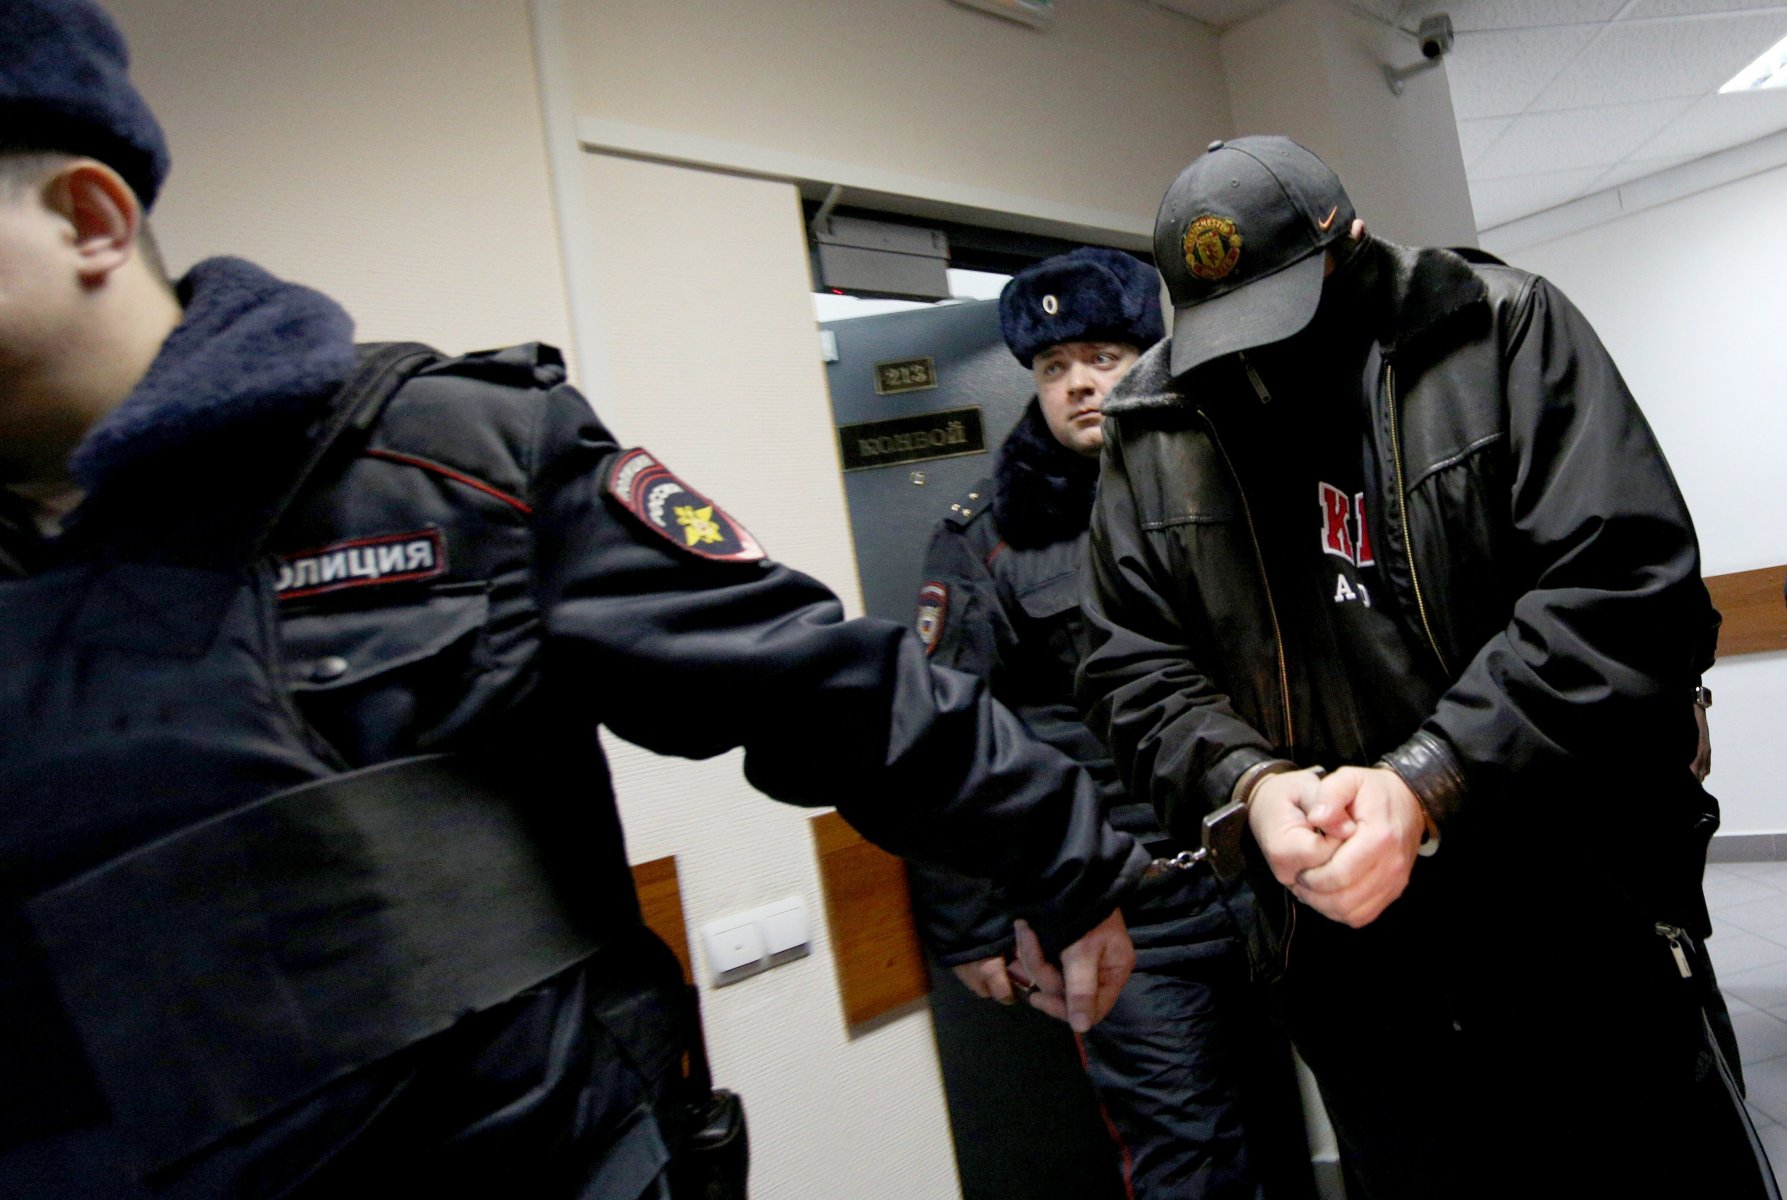  В Подмосковье за серийные нападения на салоны связи осудили банду